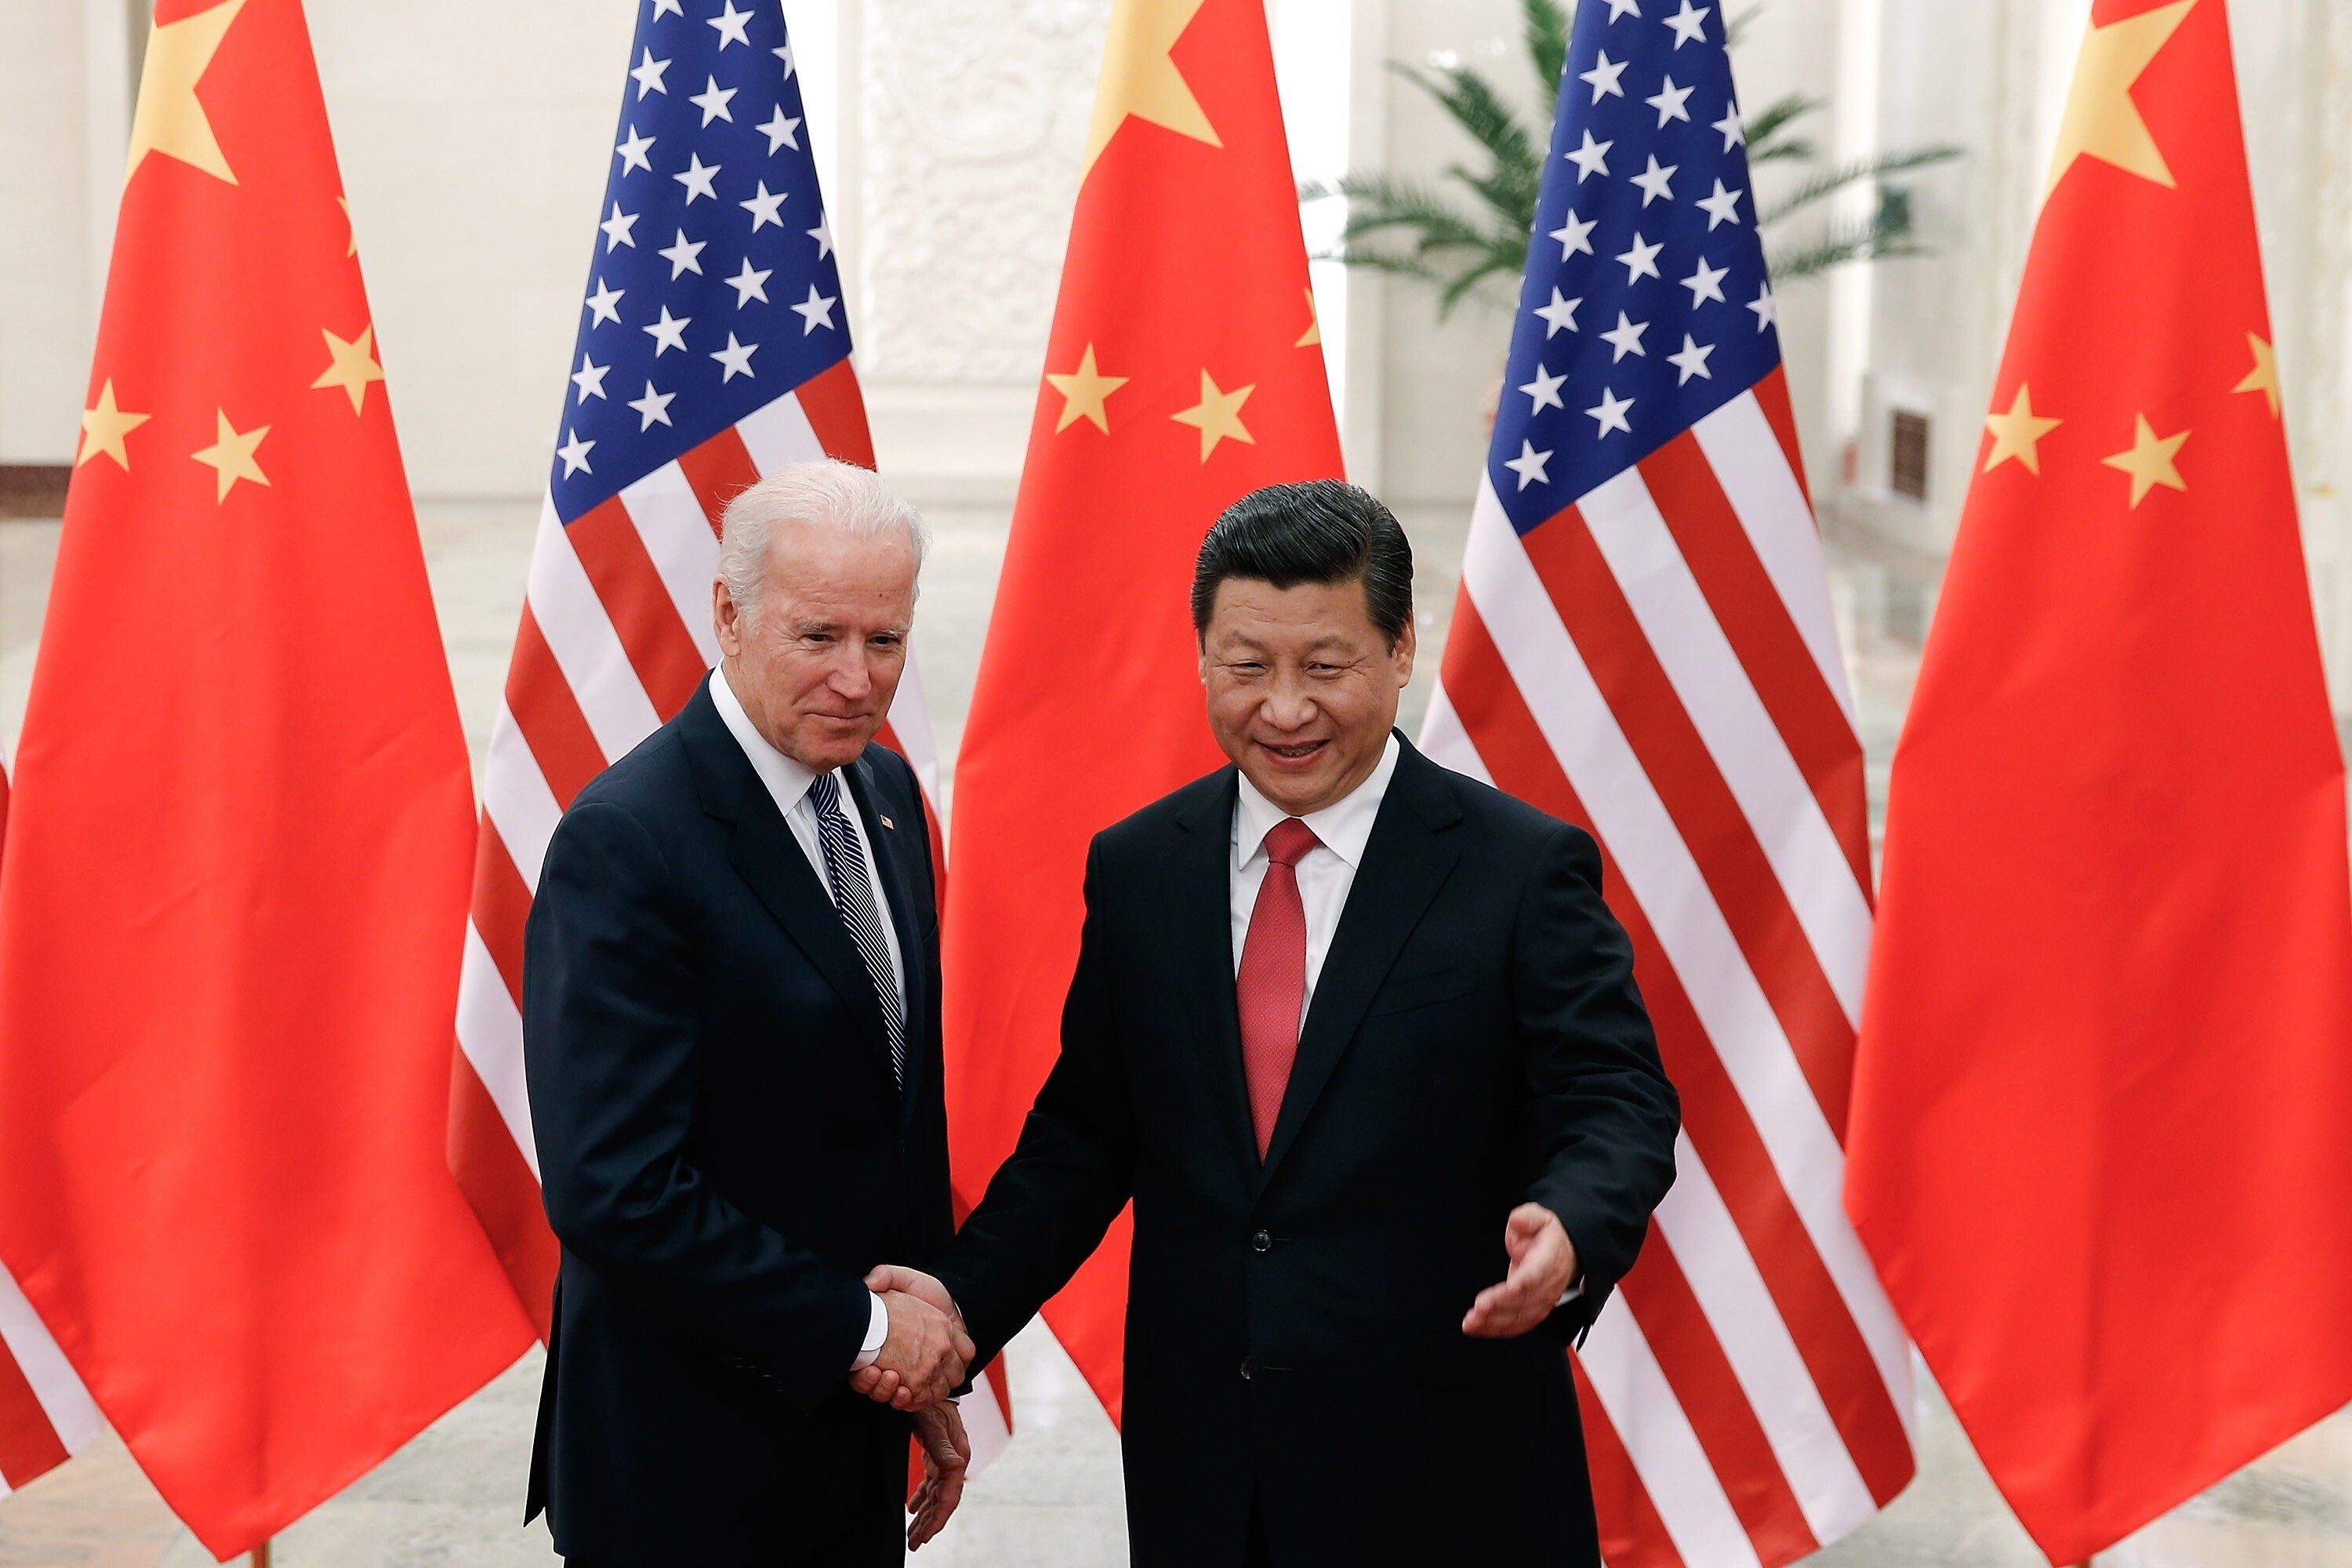 Joe Biden met Xi Jinping in Beijing in December 2013. Photo: TNS